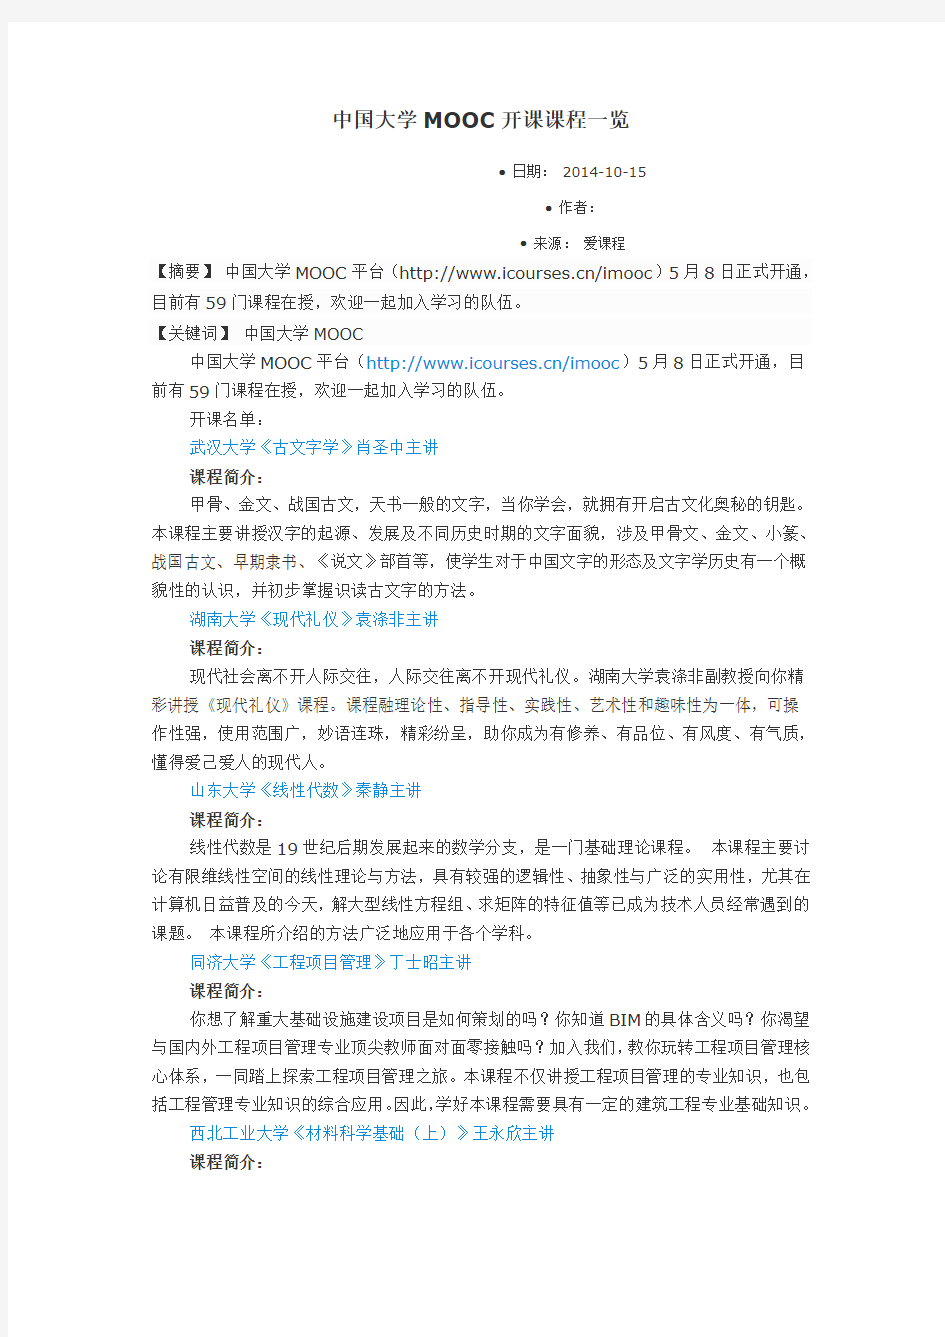 中国大学MOOC开课课程一览